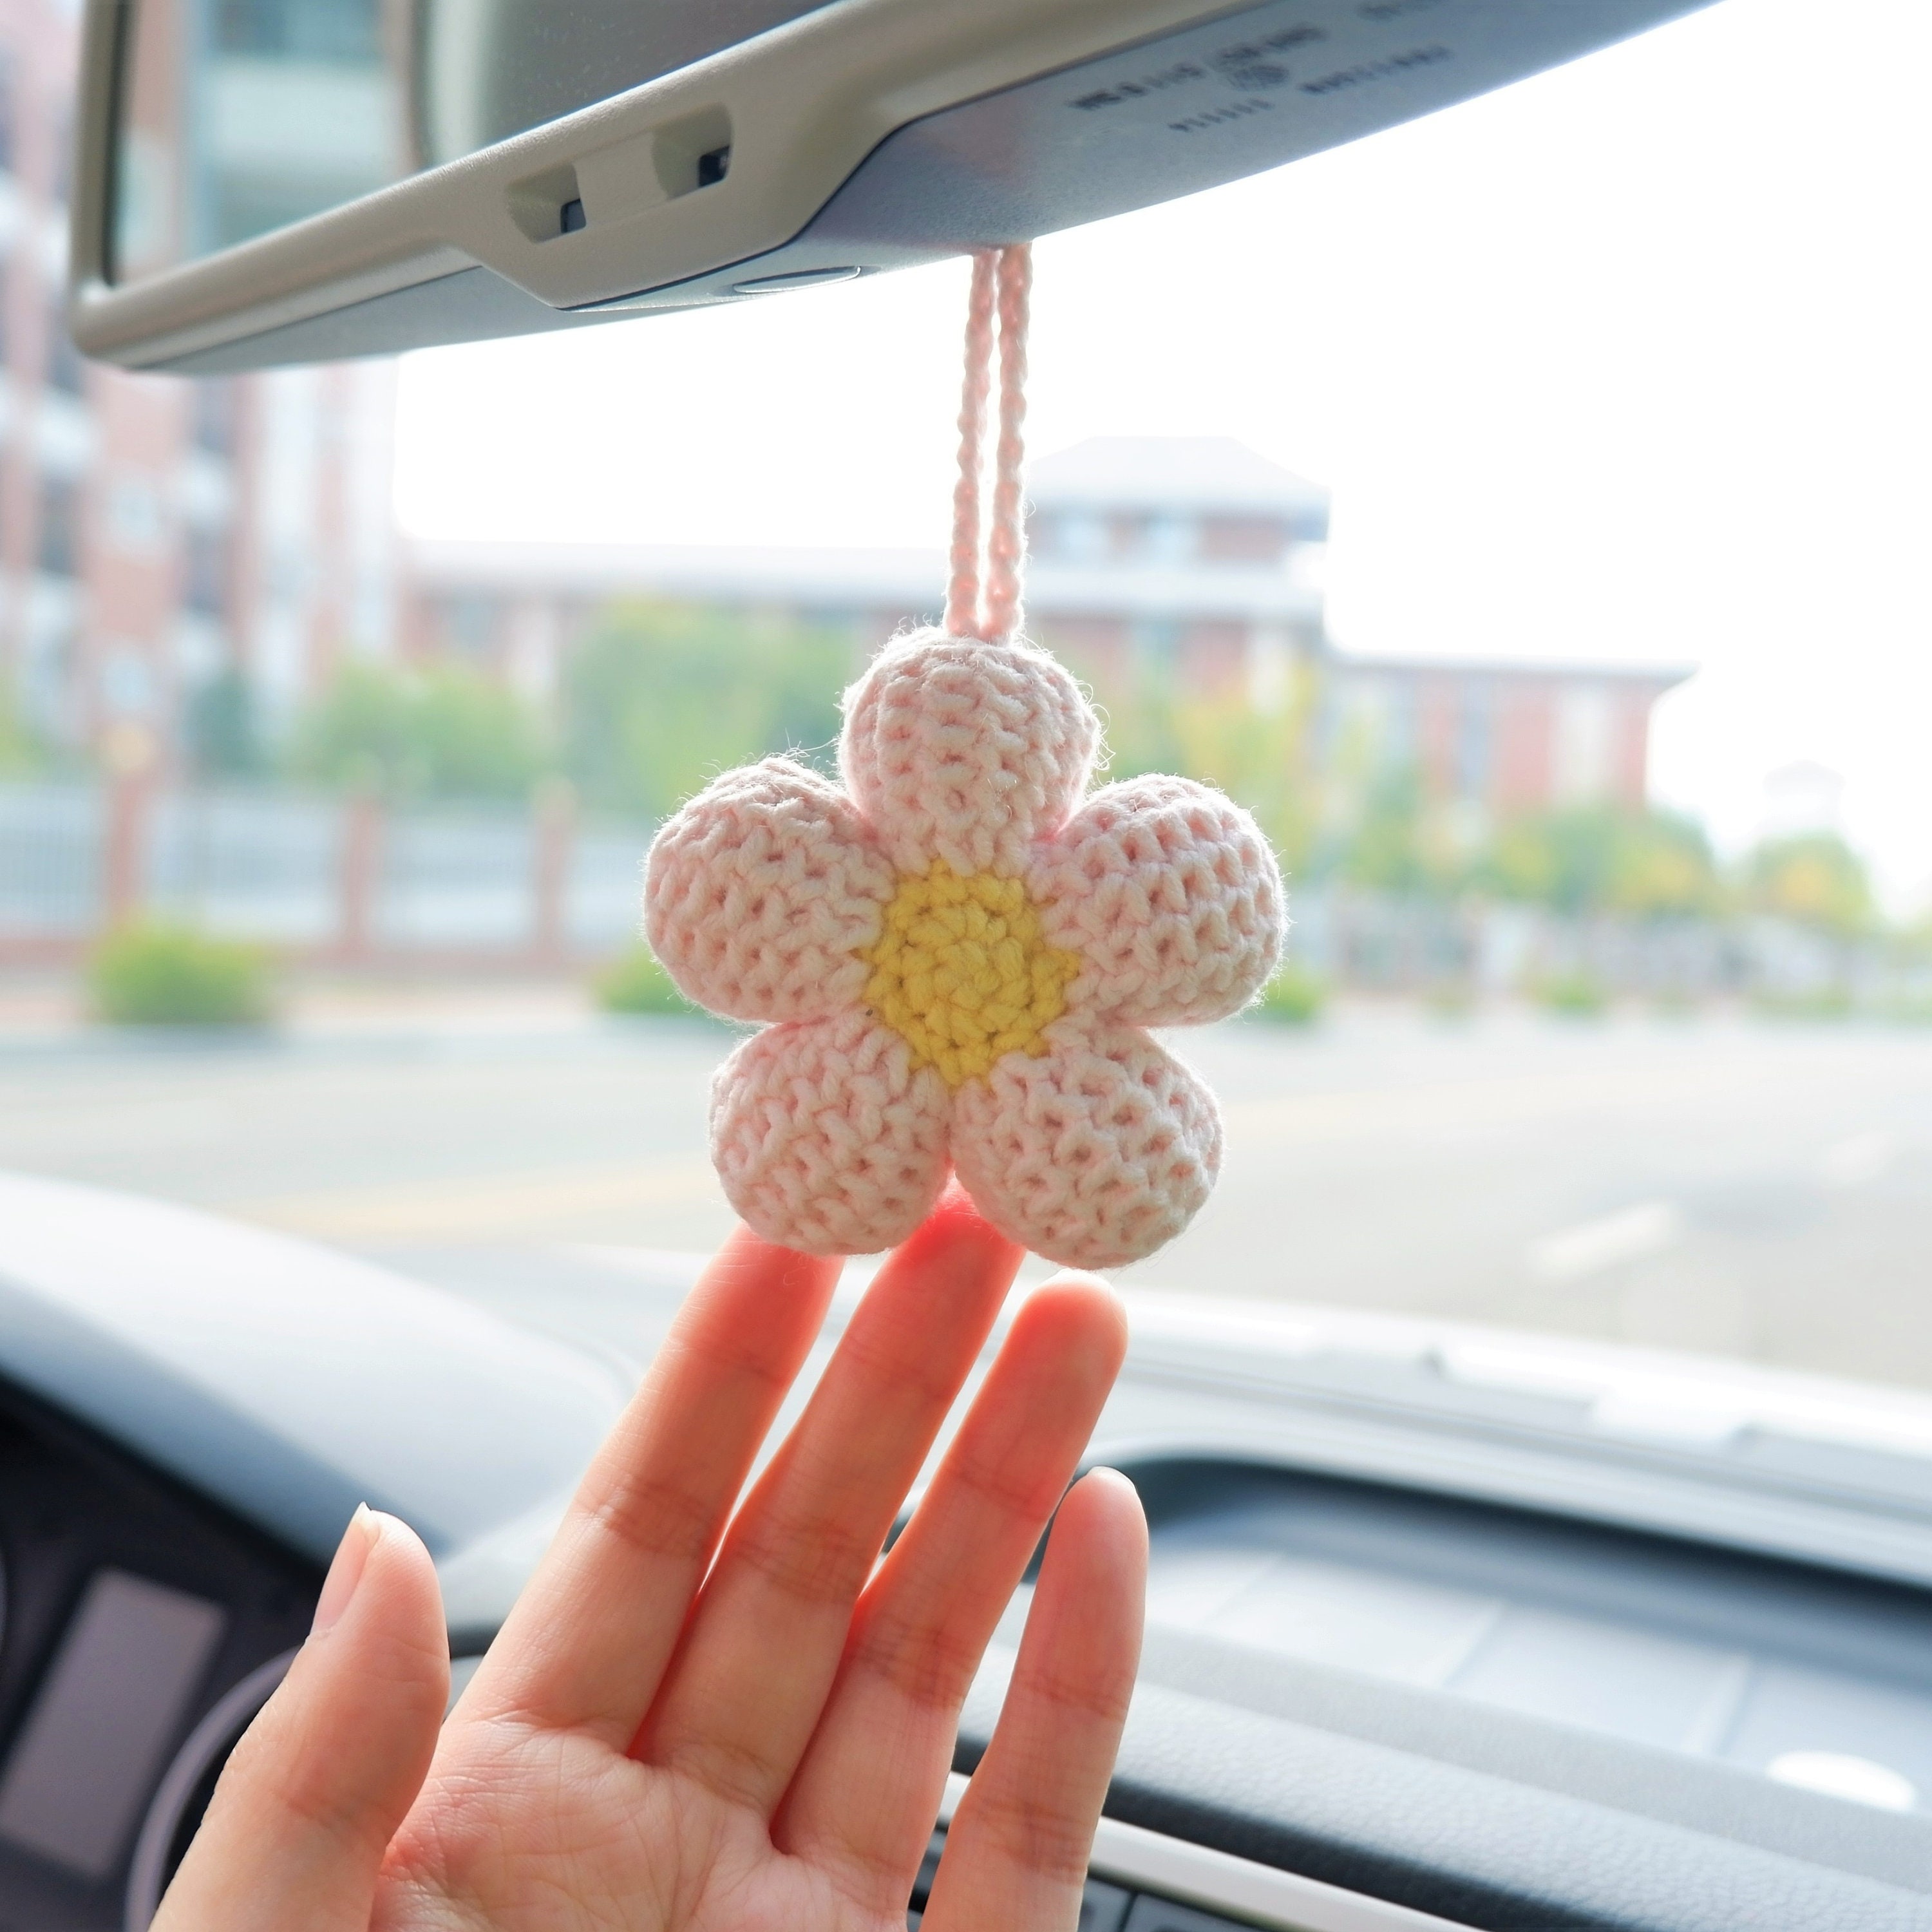 Kawaii Waffle Flower Car Mirror Hanging Accessories, Crochet Flower Car  Rear View Mirror Accessories, Car Mirror Charm Hanging D - Ornaments -  AliExpress